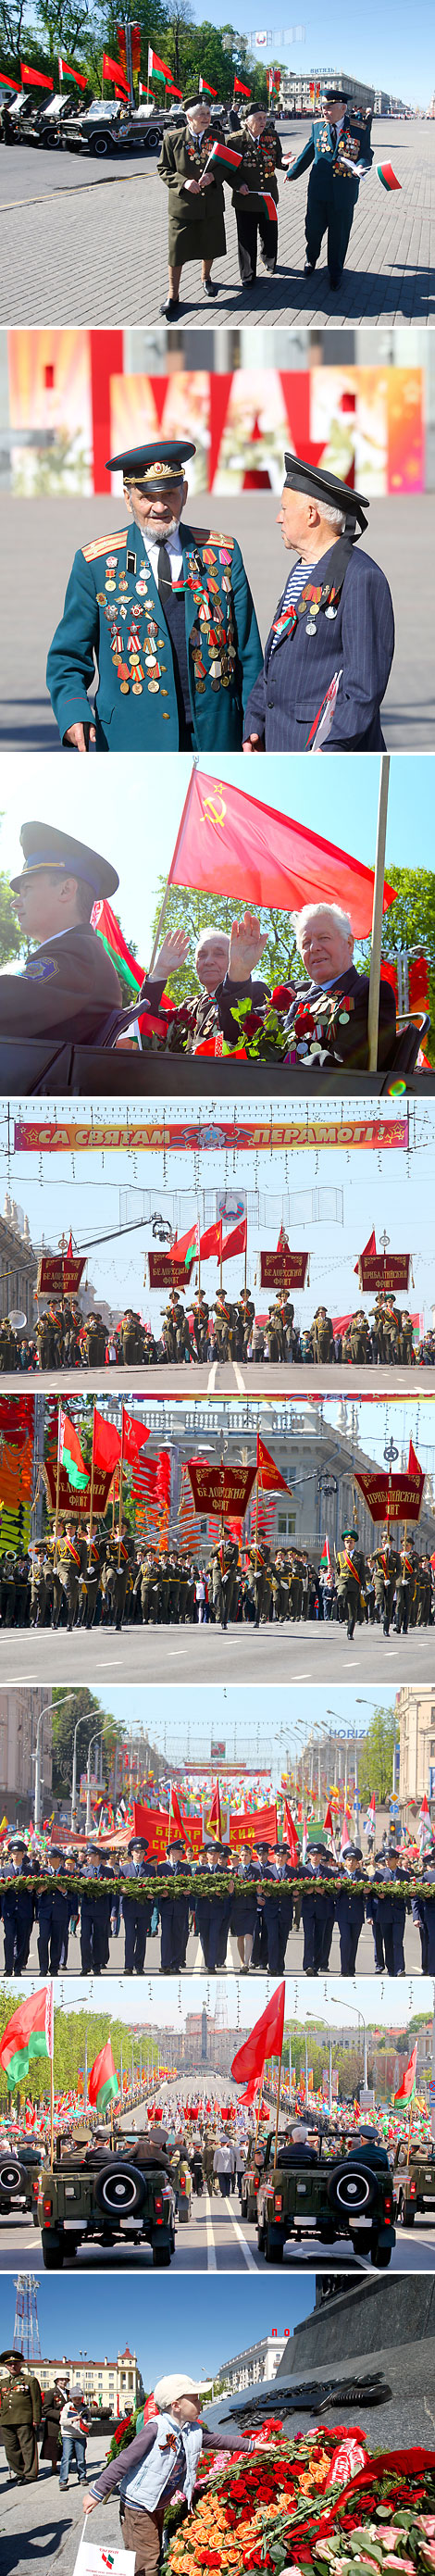 2012 год. Праздничное шествие в честь Дня Победы в Минске